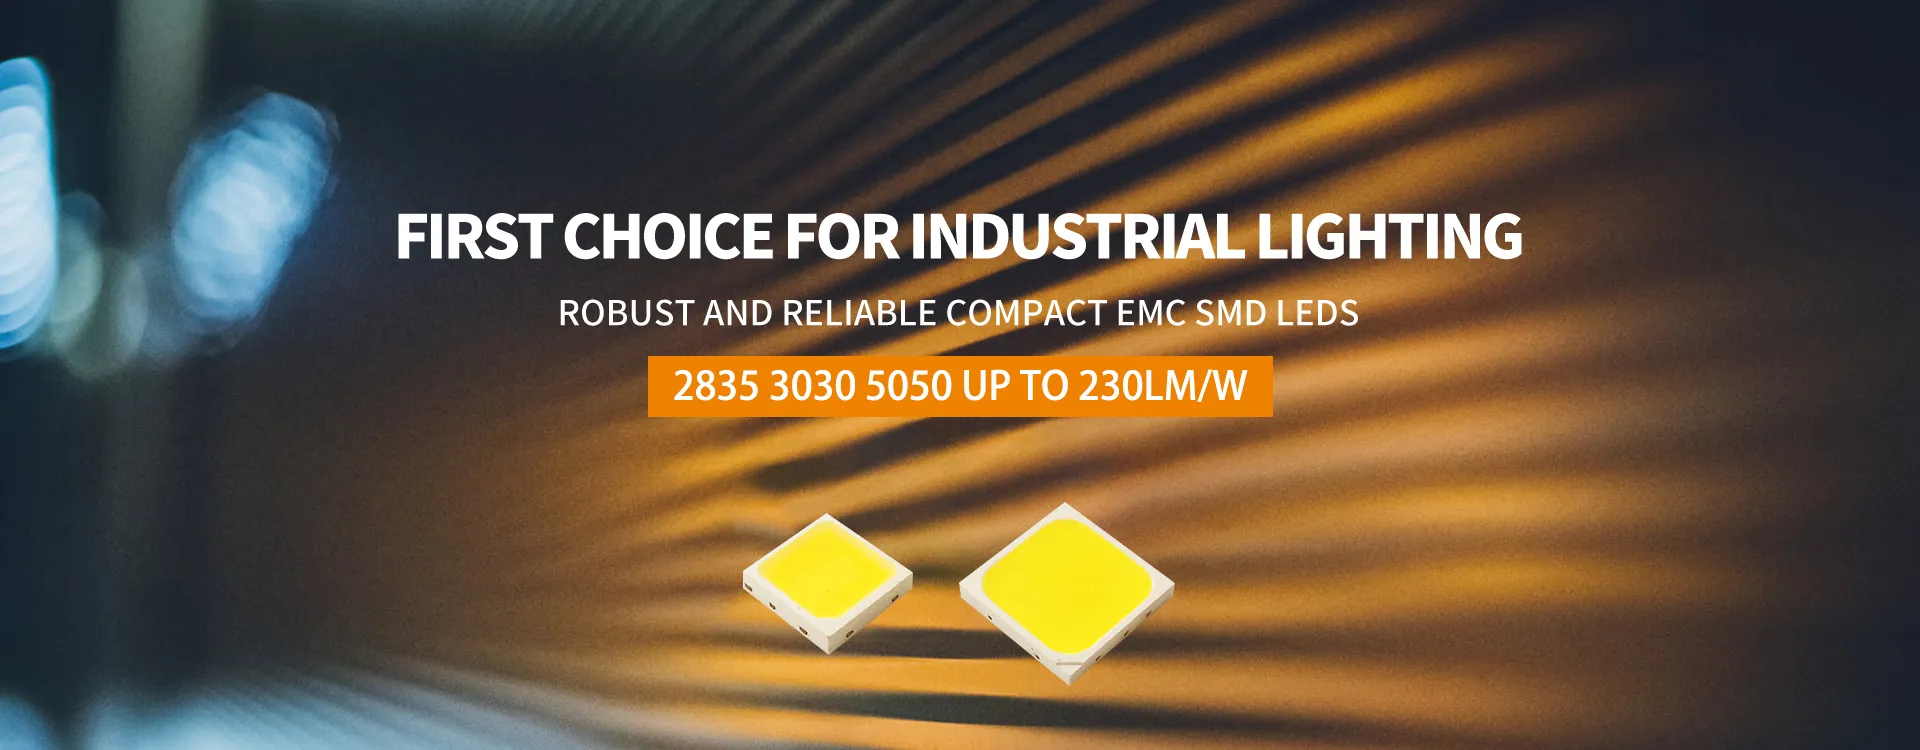 High efficacy EMC SMD LED 3030 5050